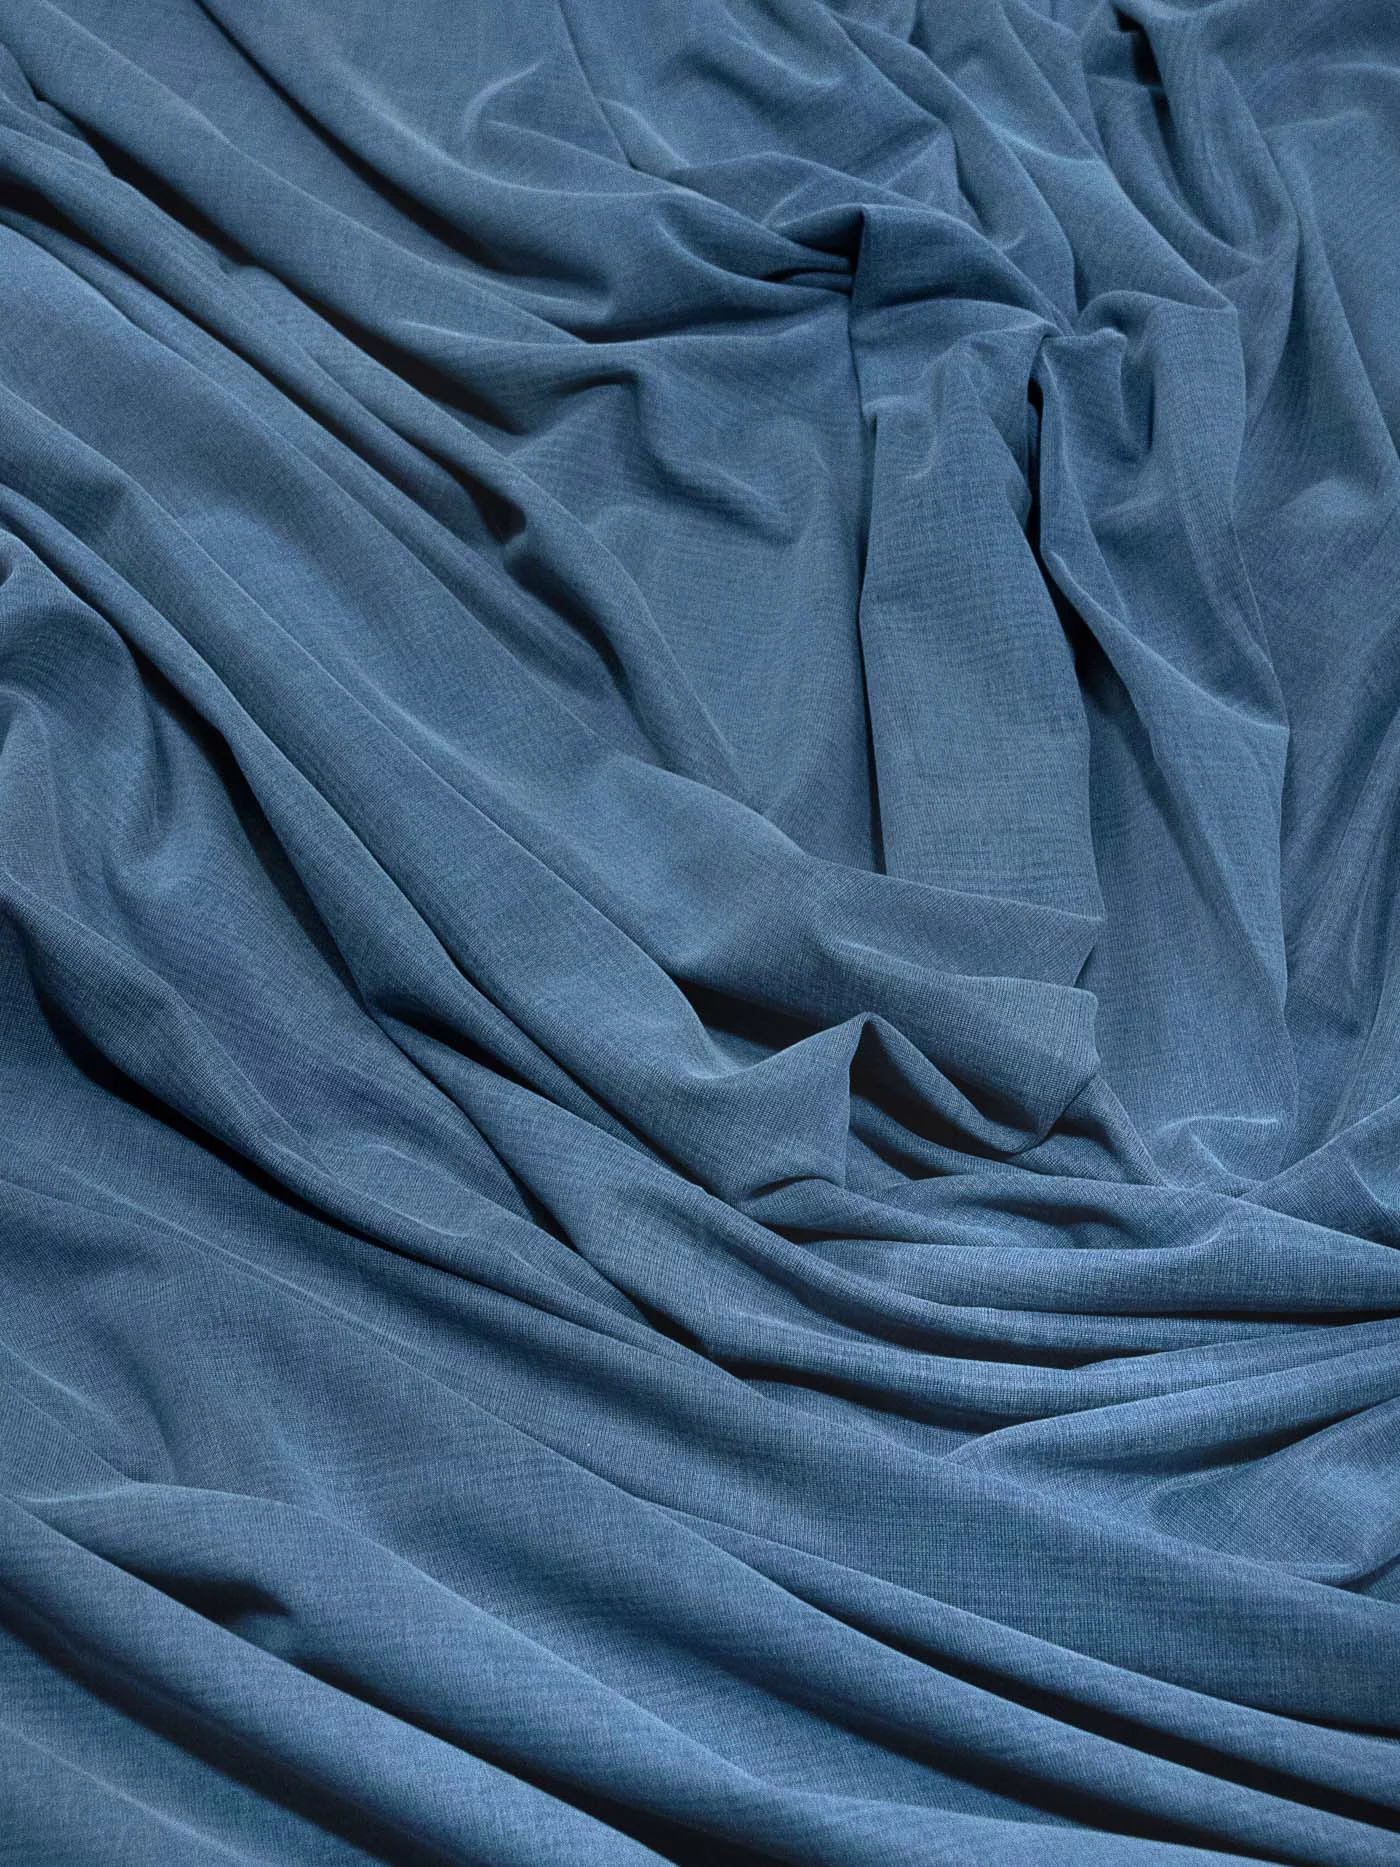 Трикотаж однотонный, цвет джинсовый, 1092113-1 150см купить в Москве - цена  2370.00 руб.